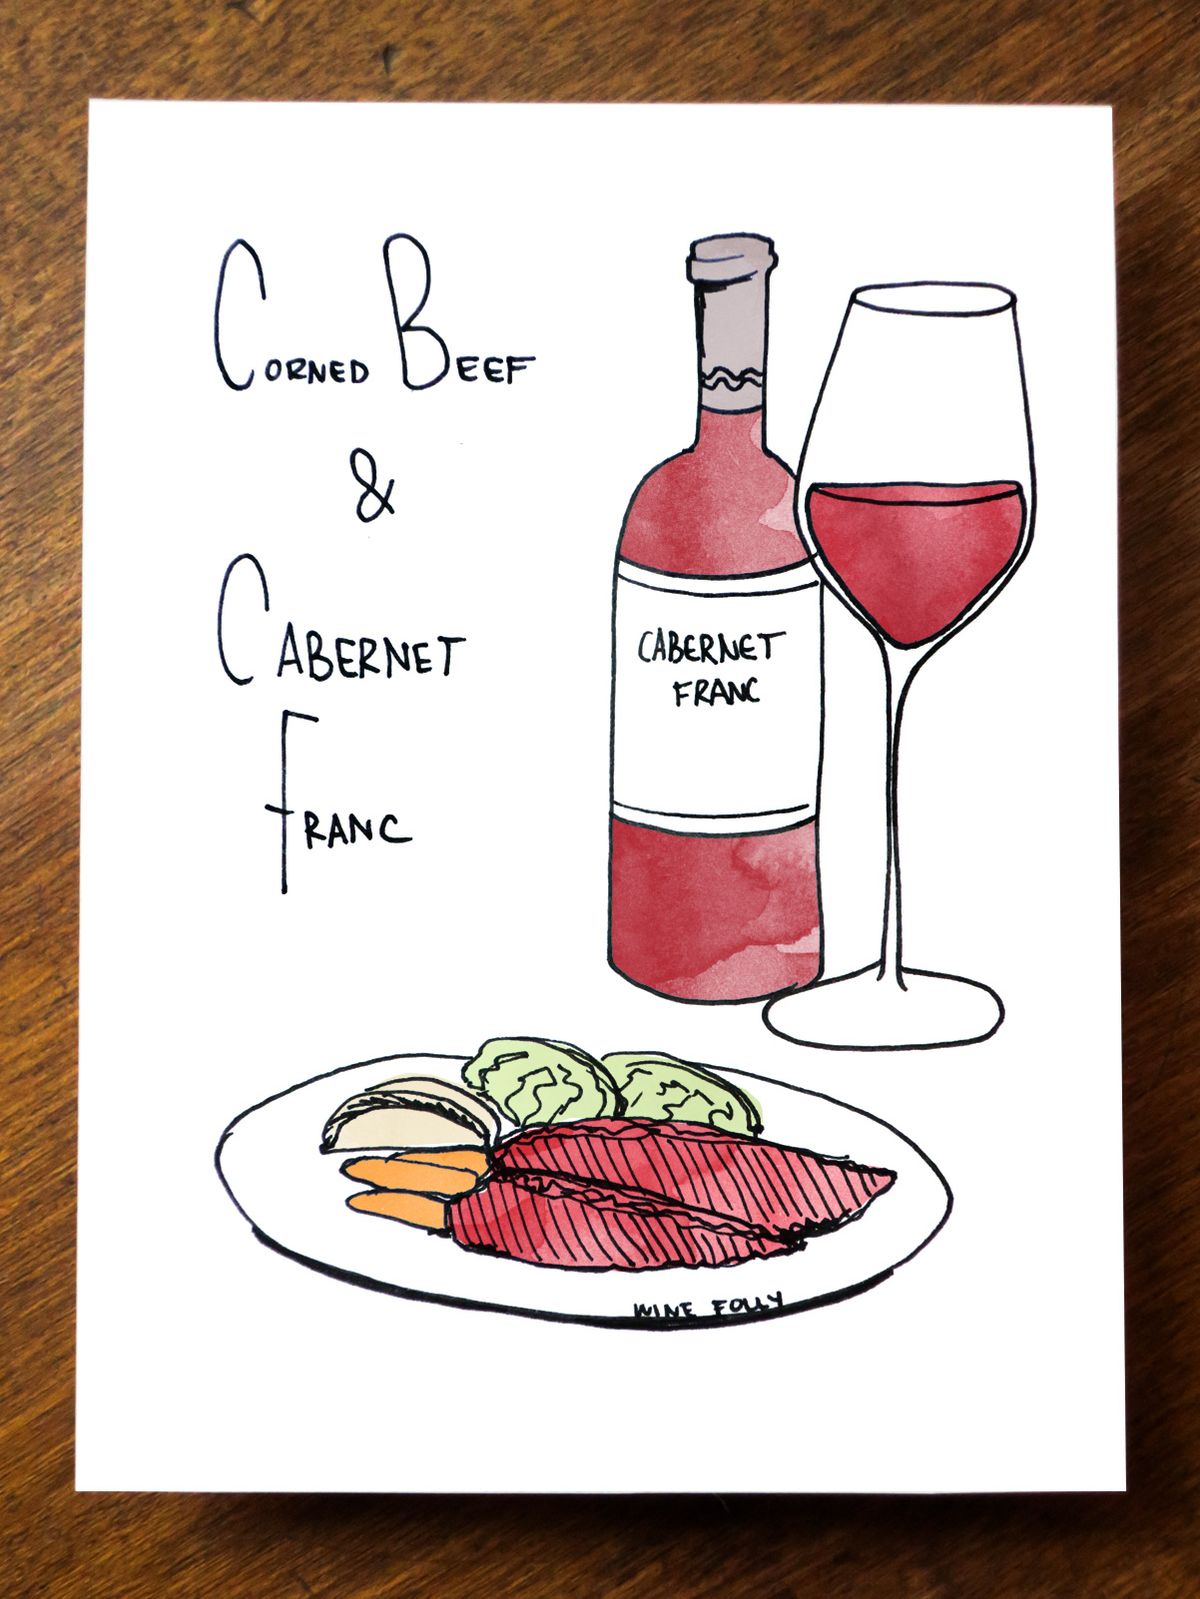 corned-beef-maridaje-vino-cabernet-franc